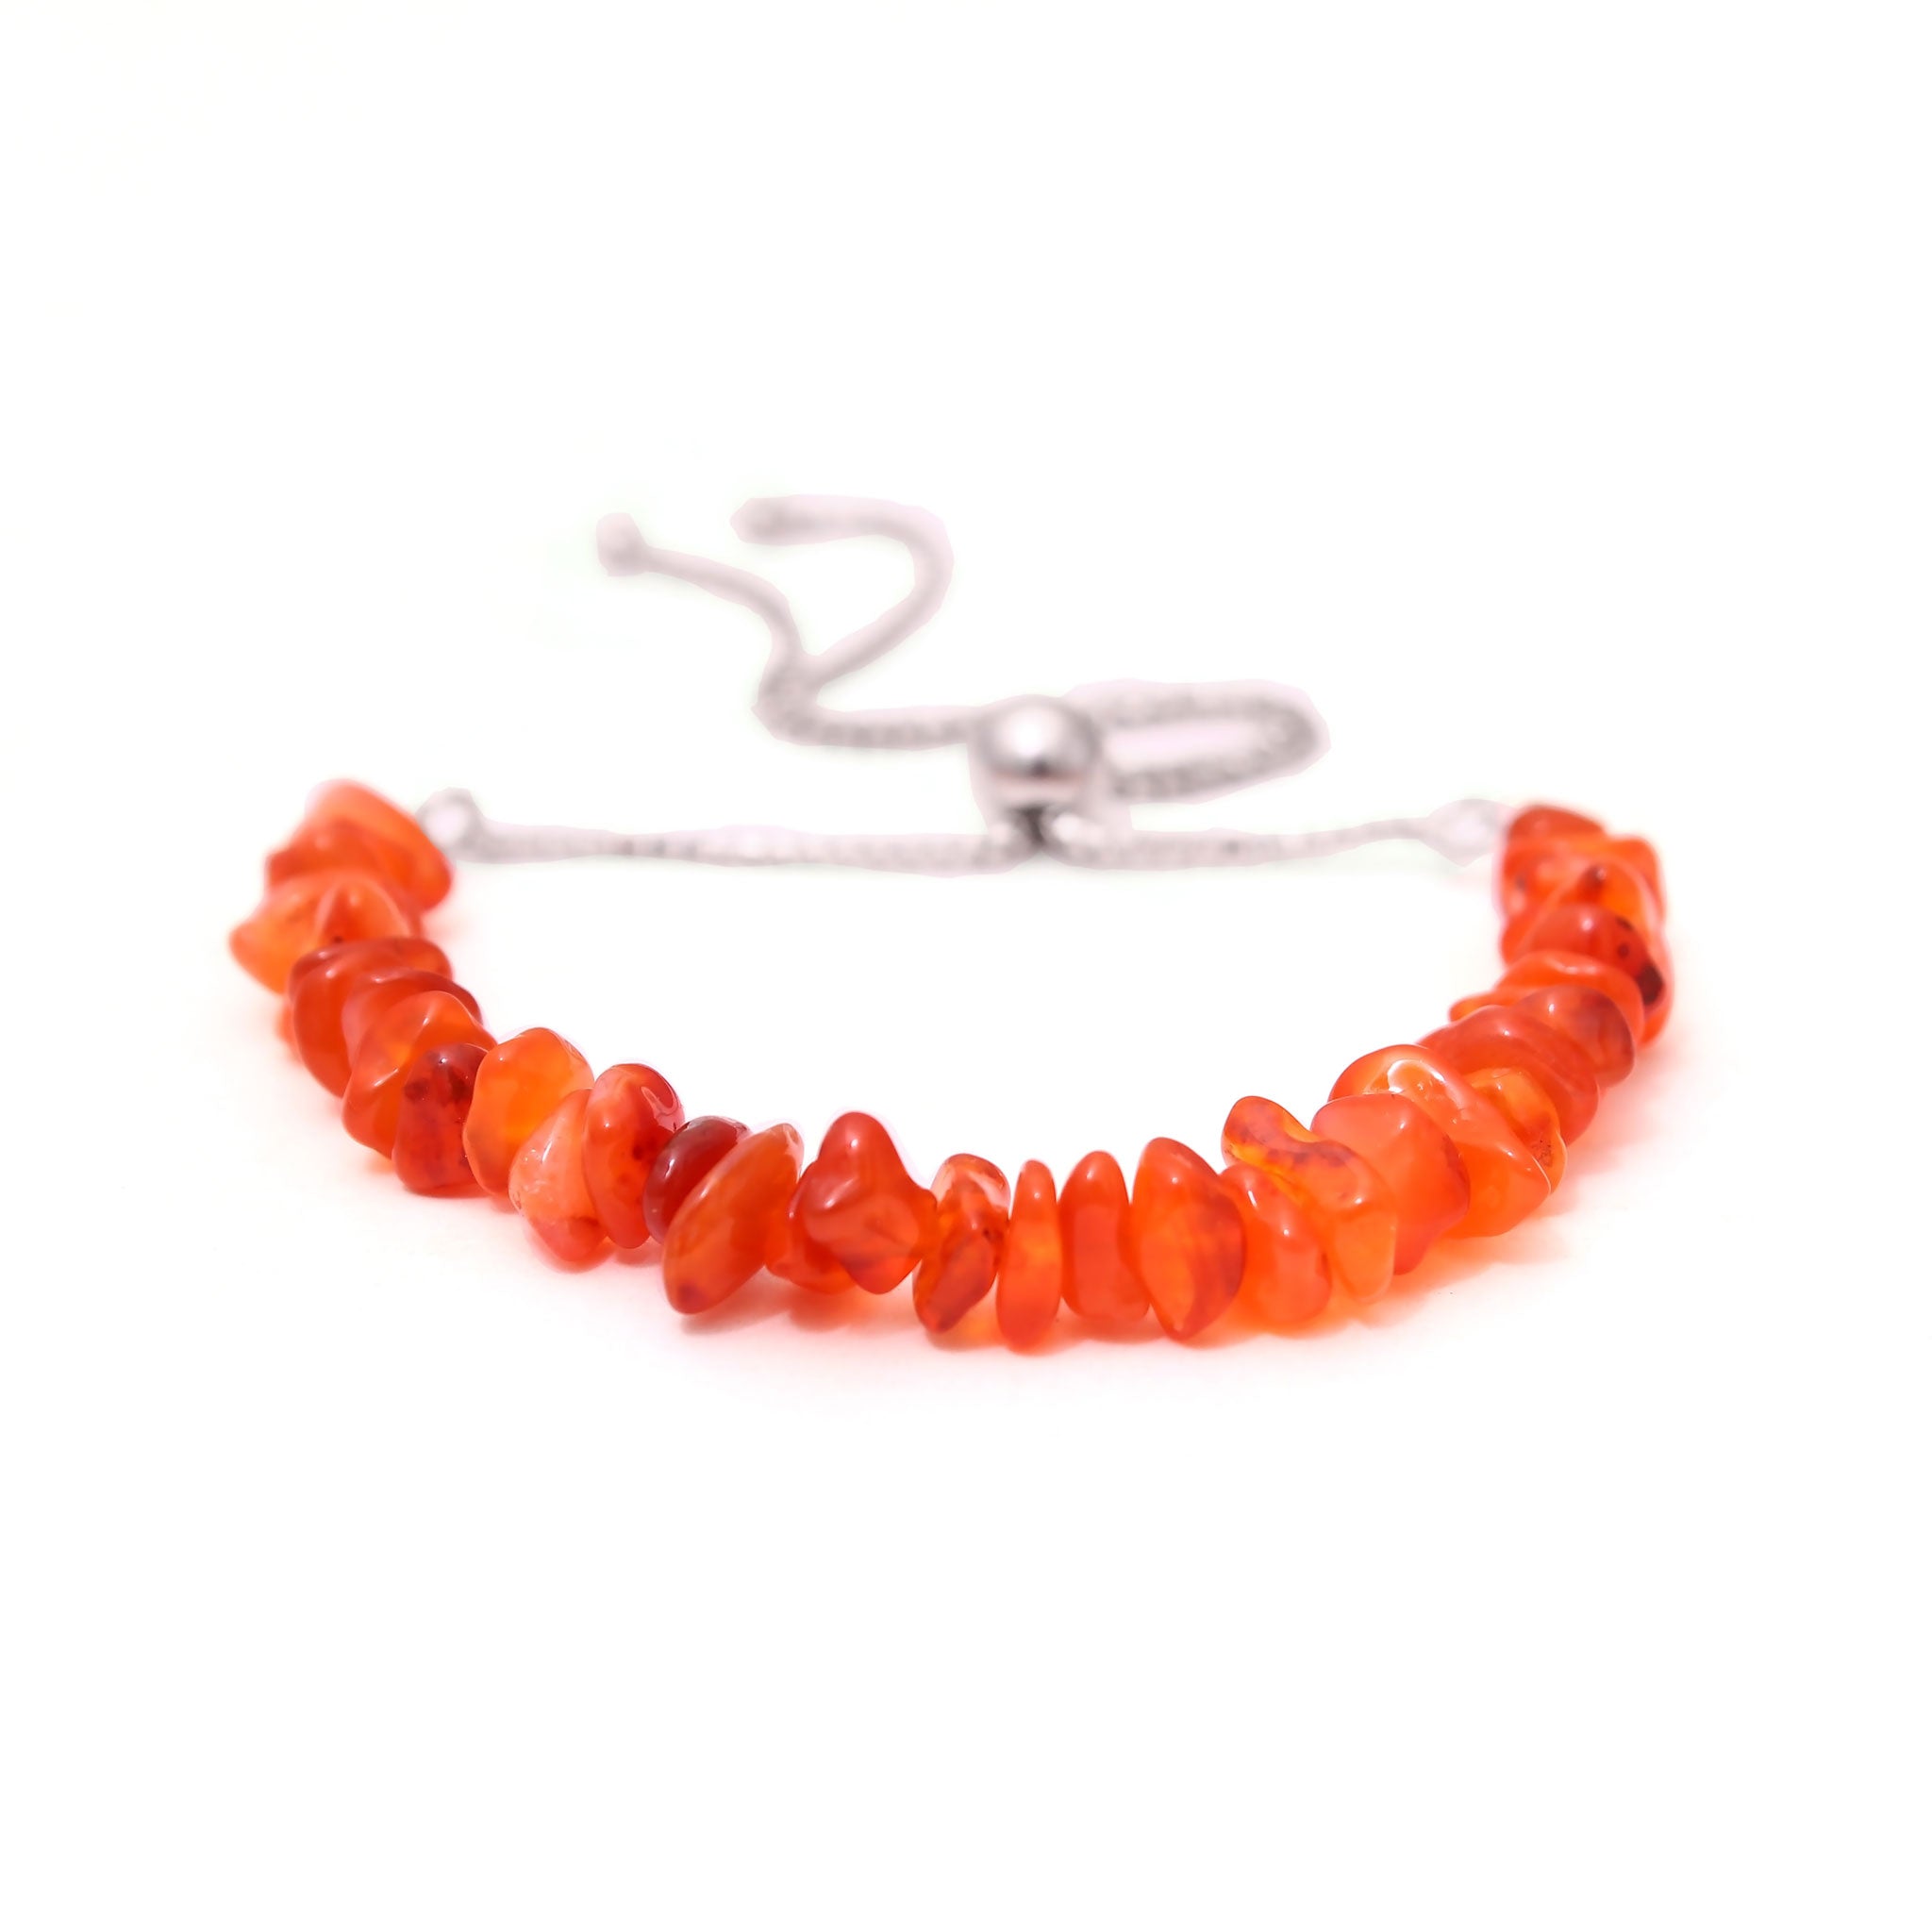 Twin Heart Charm Red Carnelian Bracelet - Luna Jewellery Designs